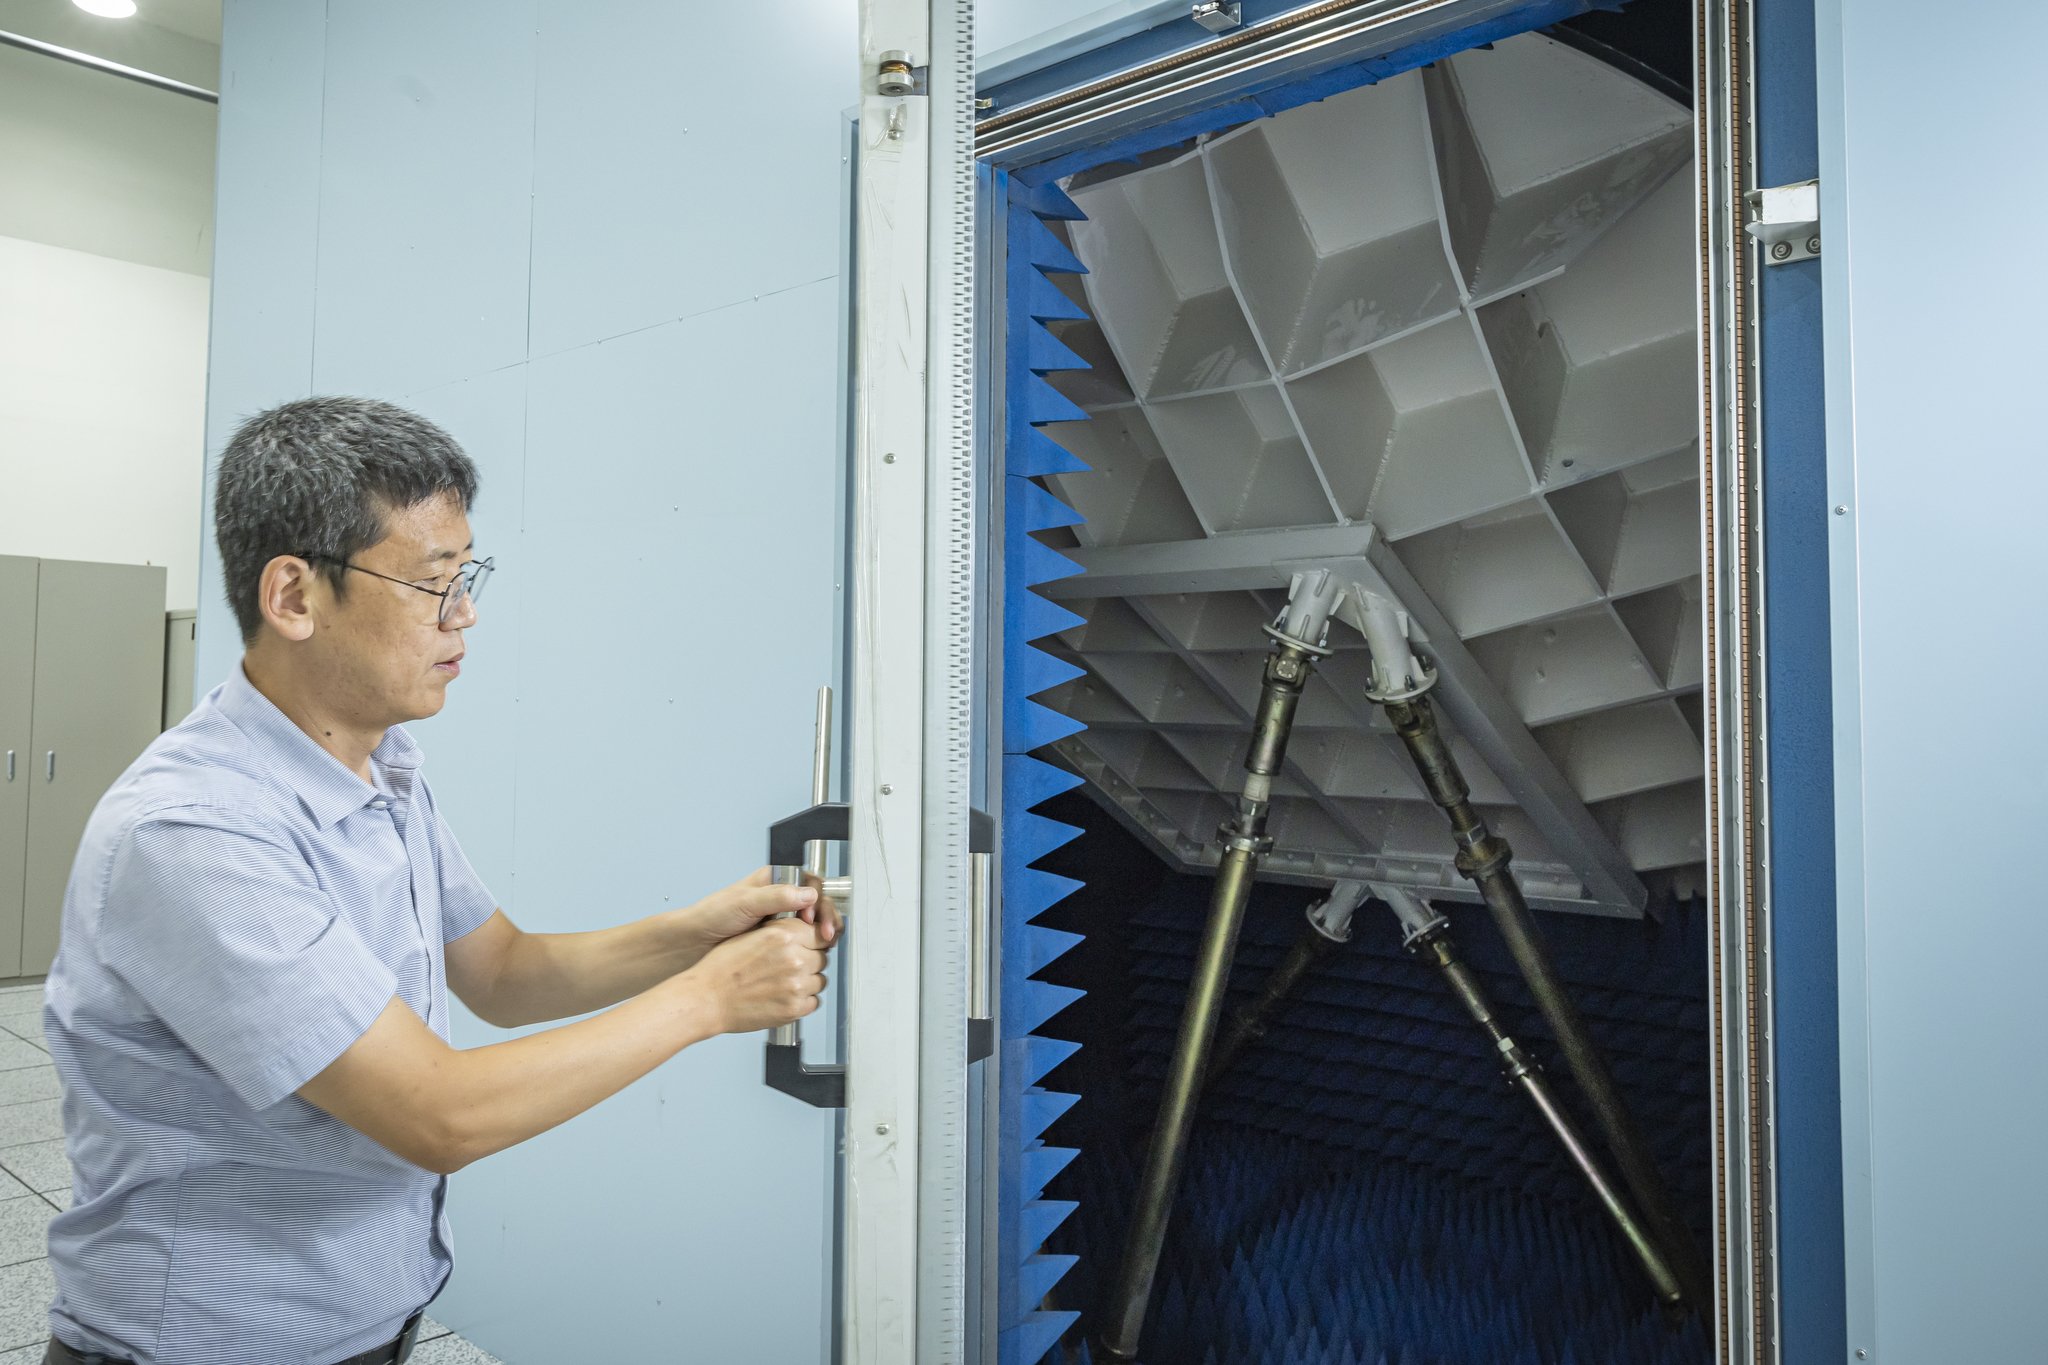     Deok-Jong Park, pesquisador sênior, abre as portas para equipamentos transceptores no Deep Space Antenna Center.  É aqui que as mensagens na forma de ondas de luz entram e saem.  Vários dispositivos eletrônicos estão intrinsecamente conectados em torno deste lugar. 